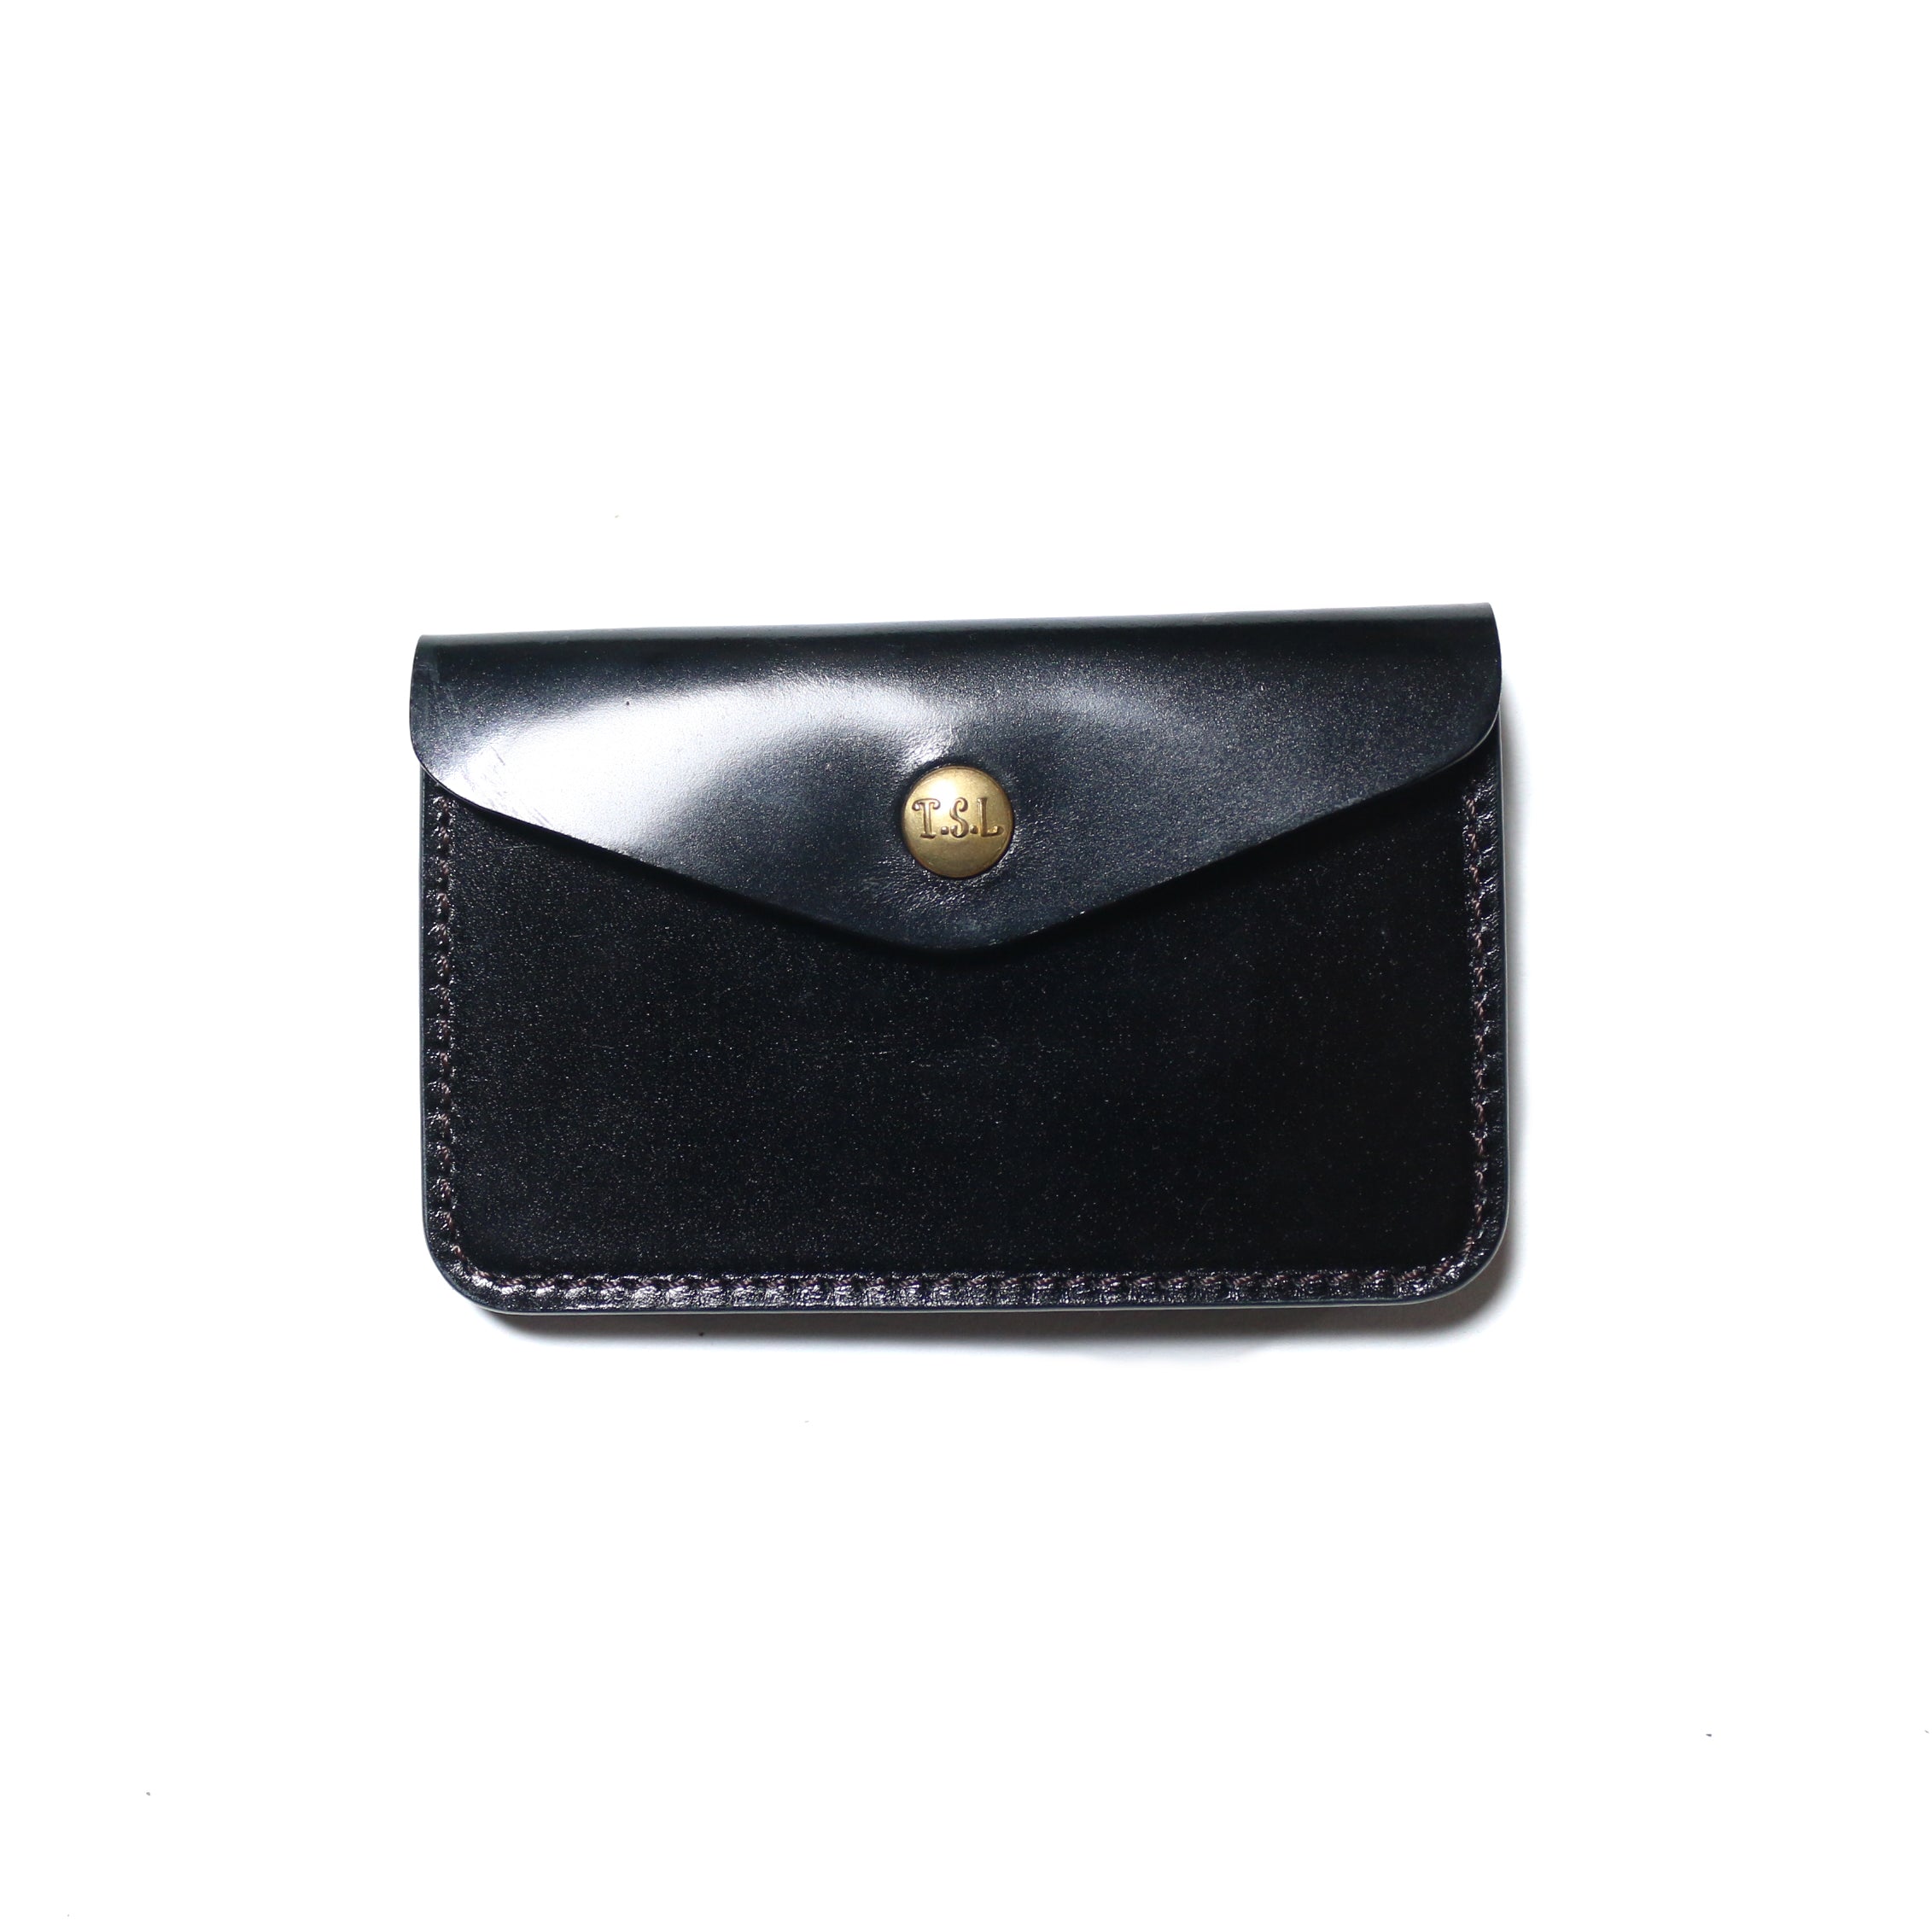 SL0250 cordovan traveler's small purse | THE SUPERIOR LABOR 